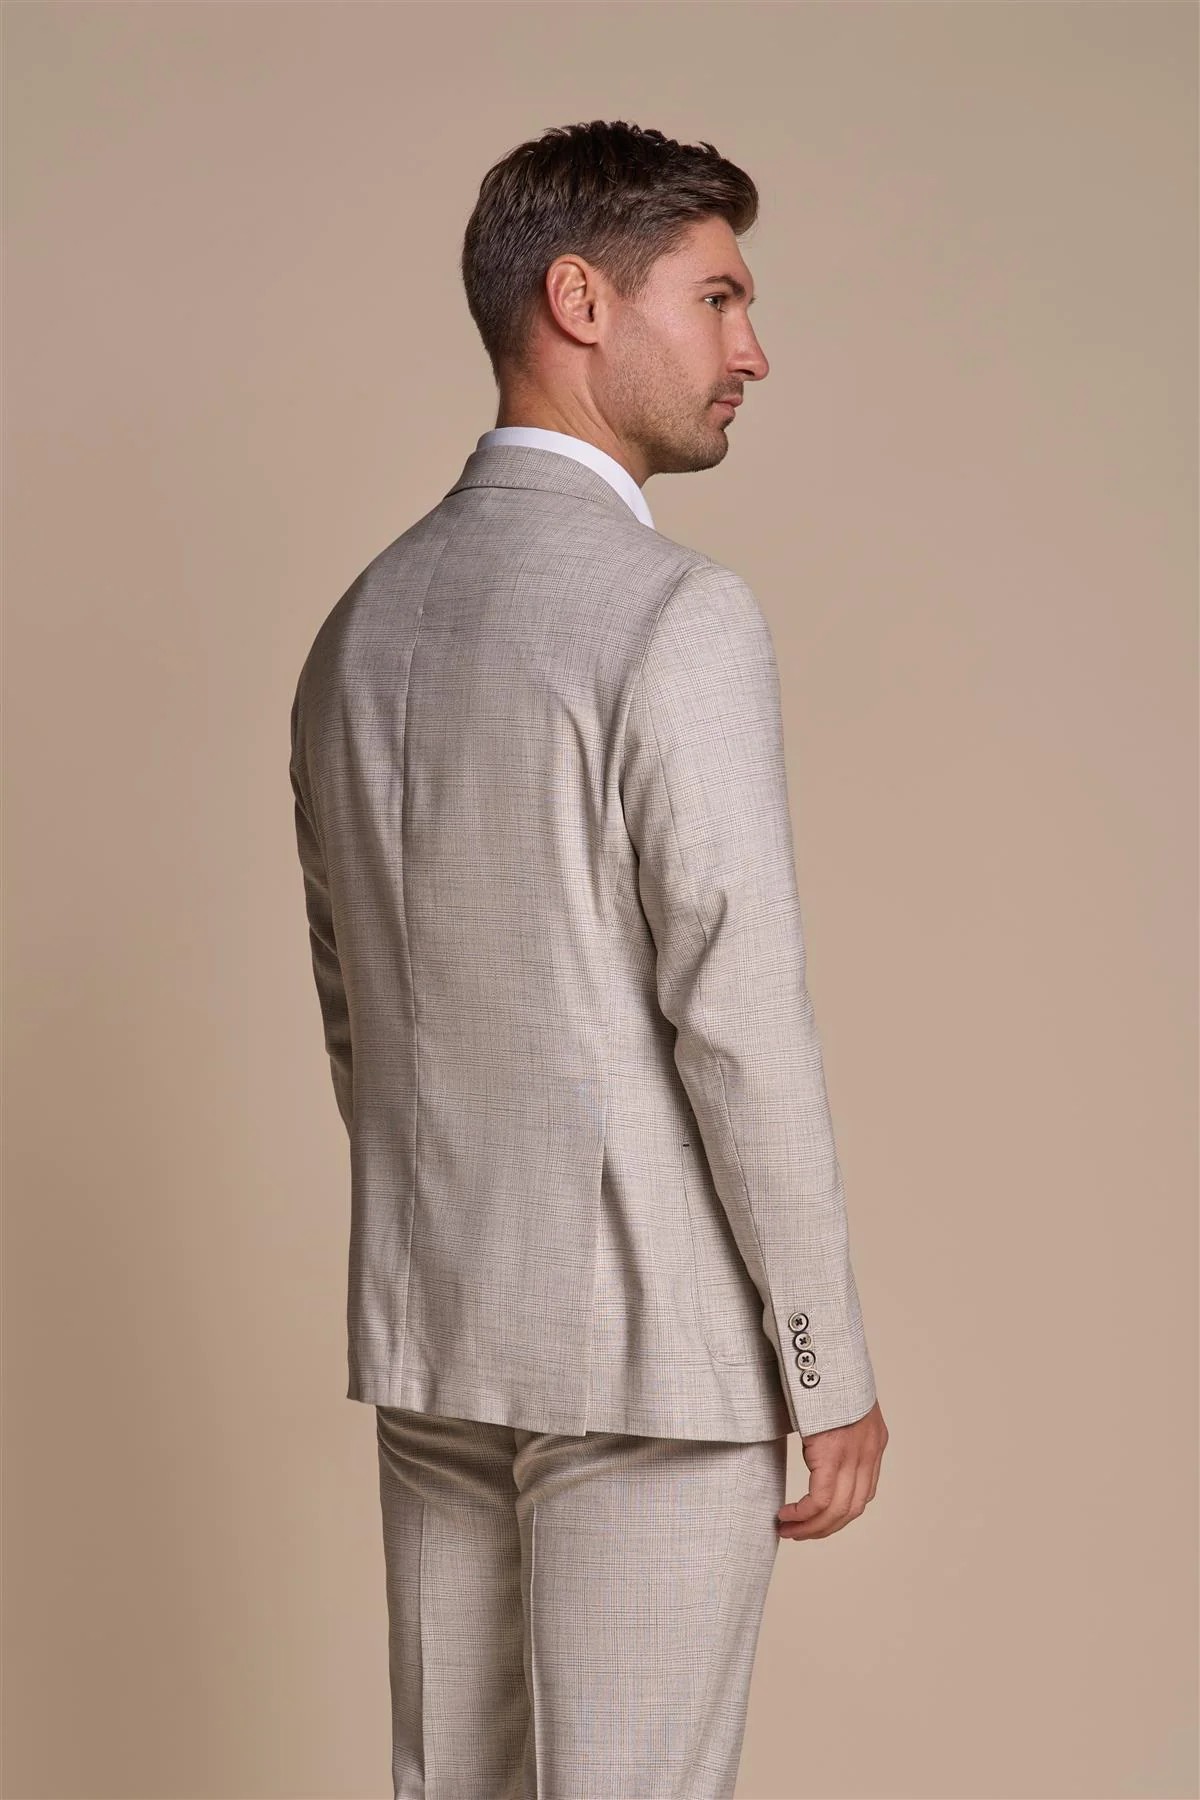 Men’s Slim Fit Tweed Check Grey Suit Jacket – RIPLEY Stone